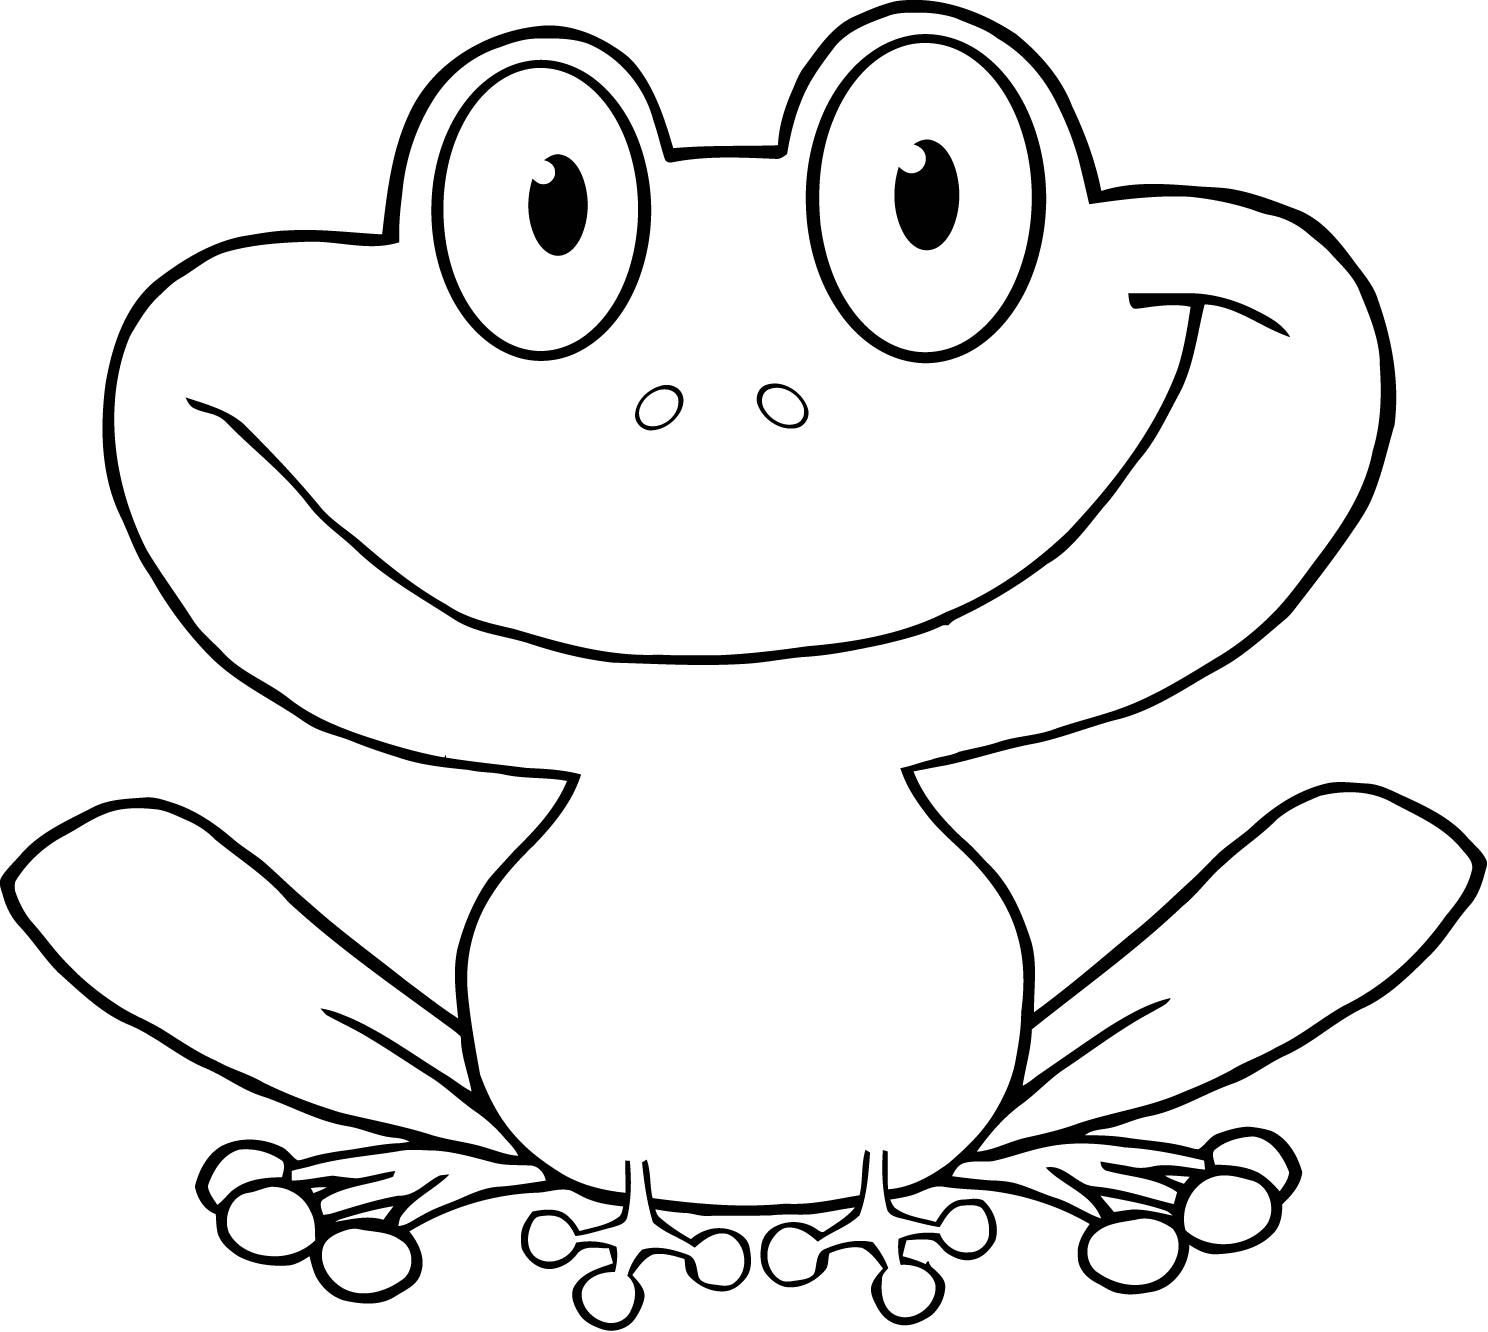 Картинки для раскрашивания лягушка для детей